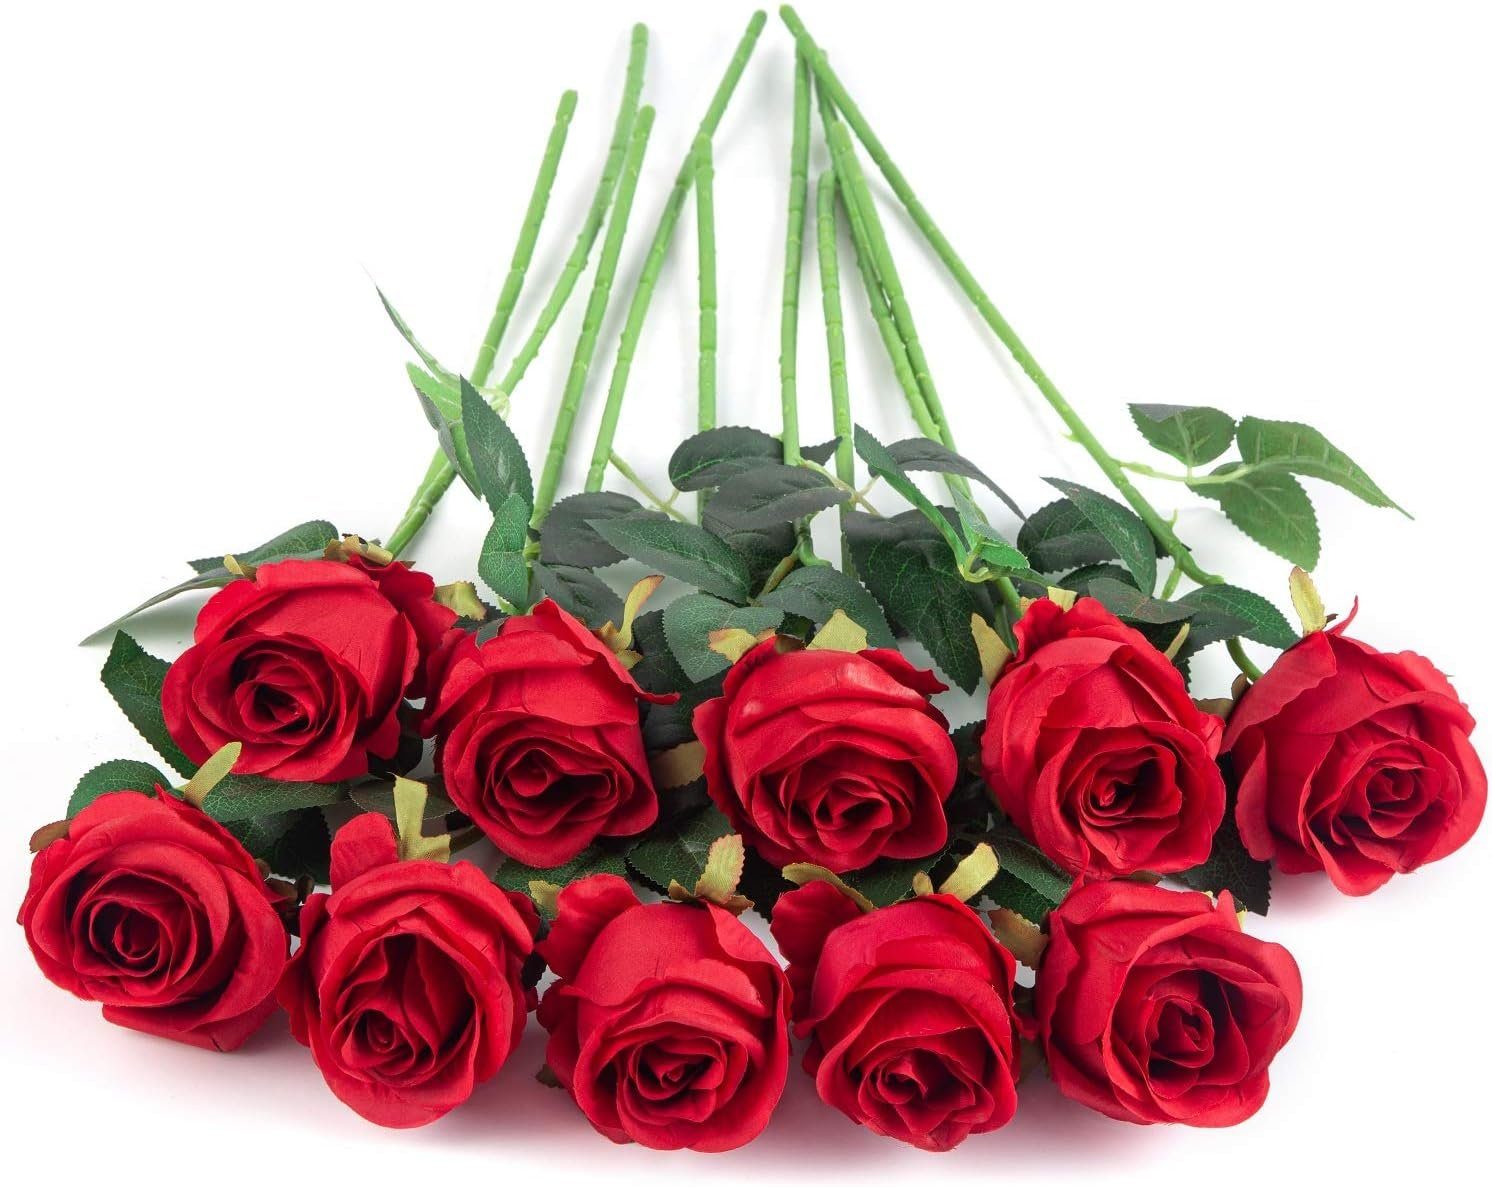 Kunstblume 10pcs Künstliche Rose Blumen DIY Rot Dekor für Stiel Party Hochzeitsstrauß Seidenrosen, Wohnkultur Gefälschte Tisch Mutoy, Herzstück Langer